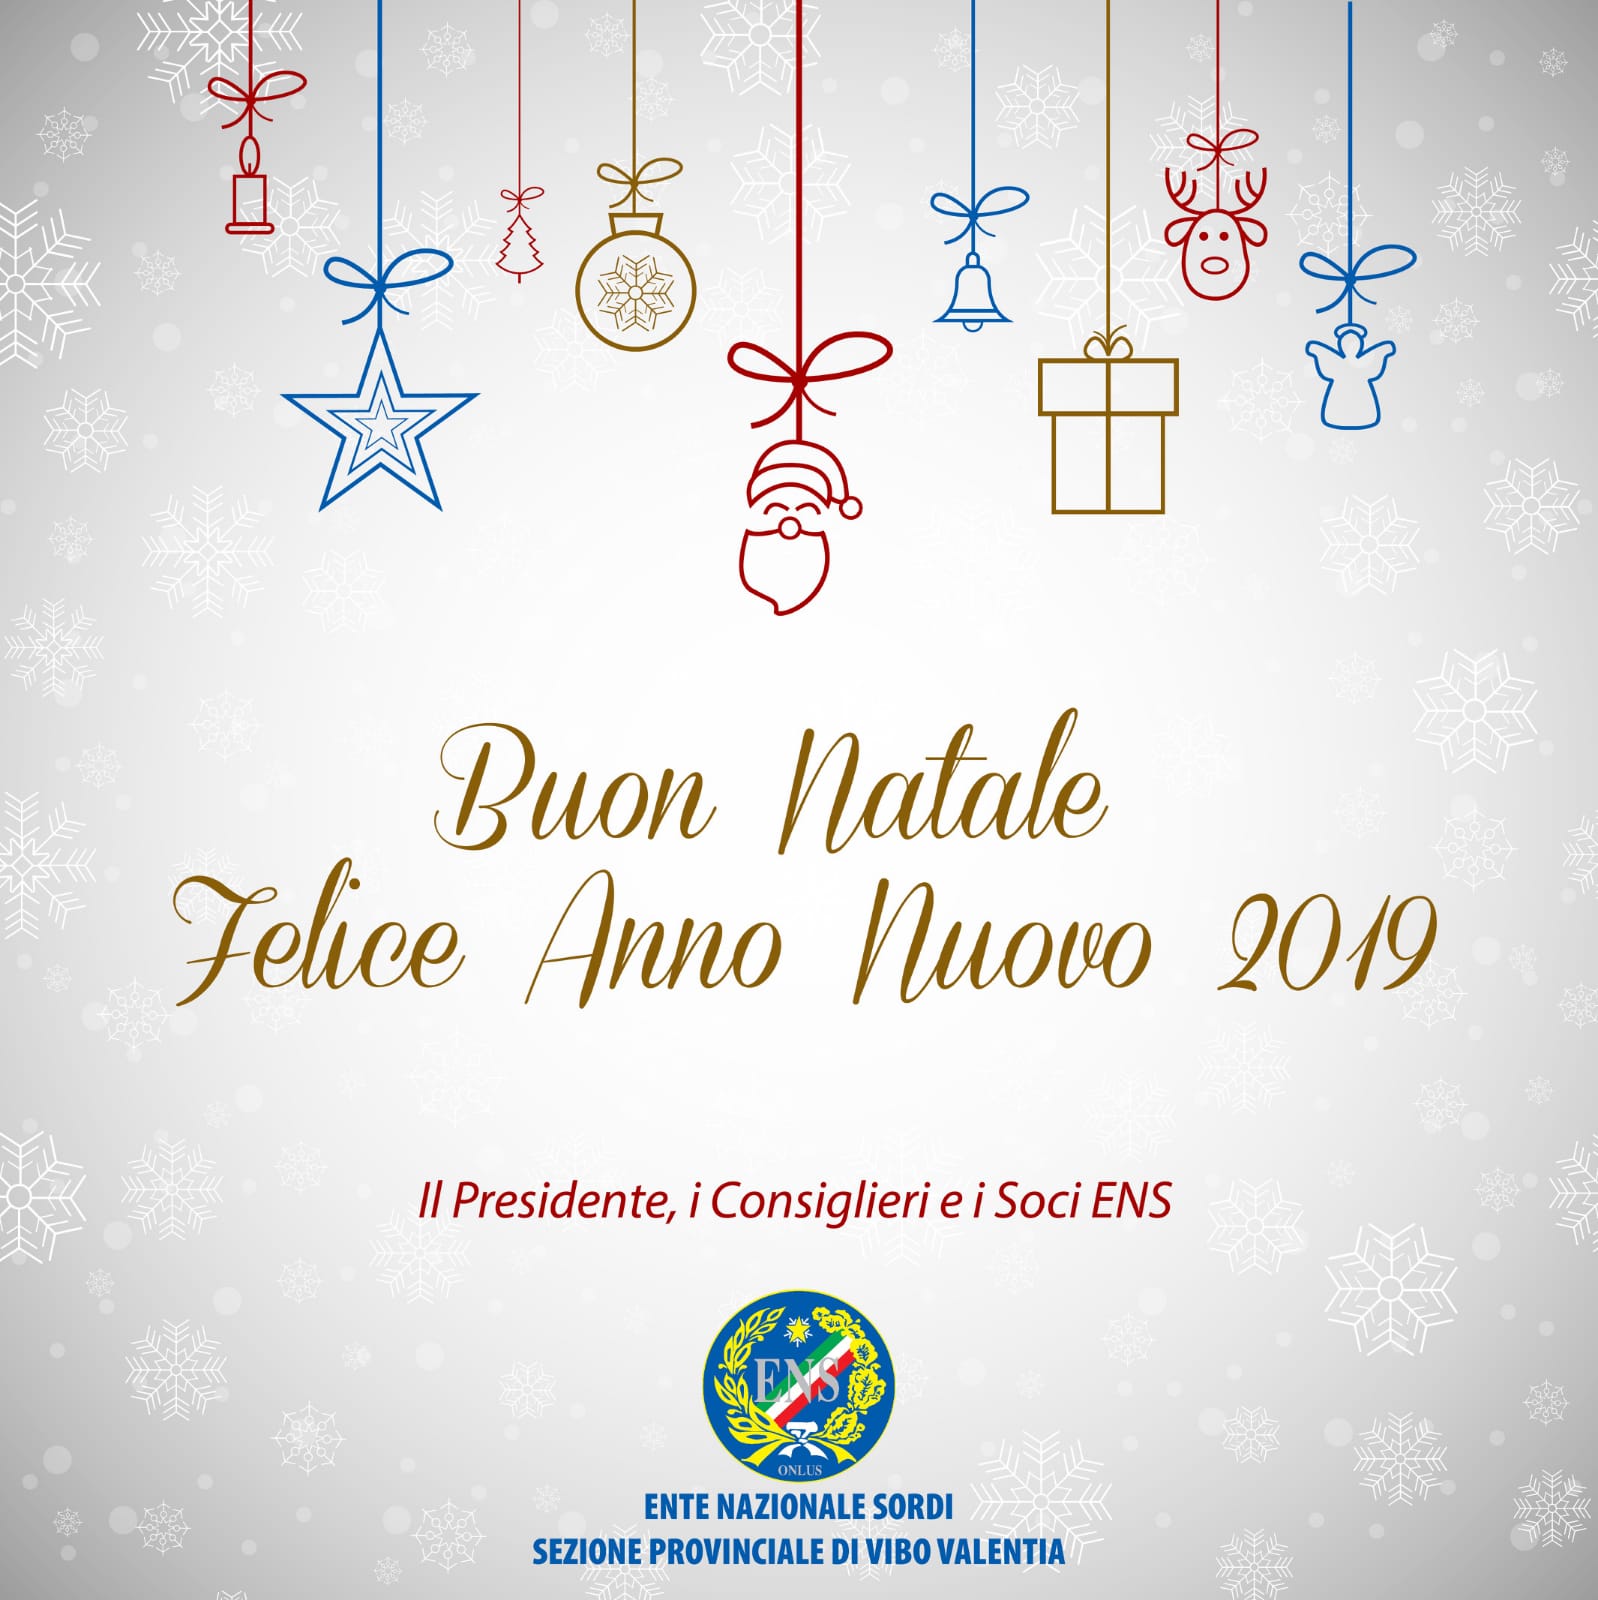 Buon Natale e Felice Anno Nuovo 2019